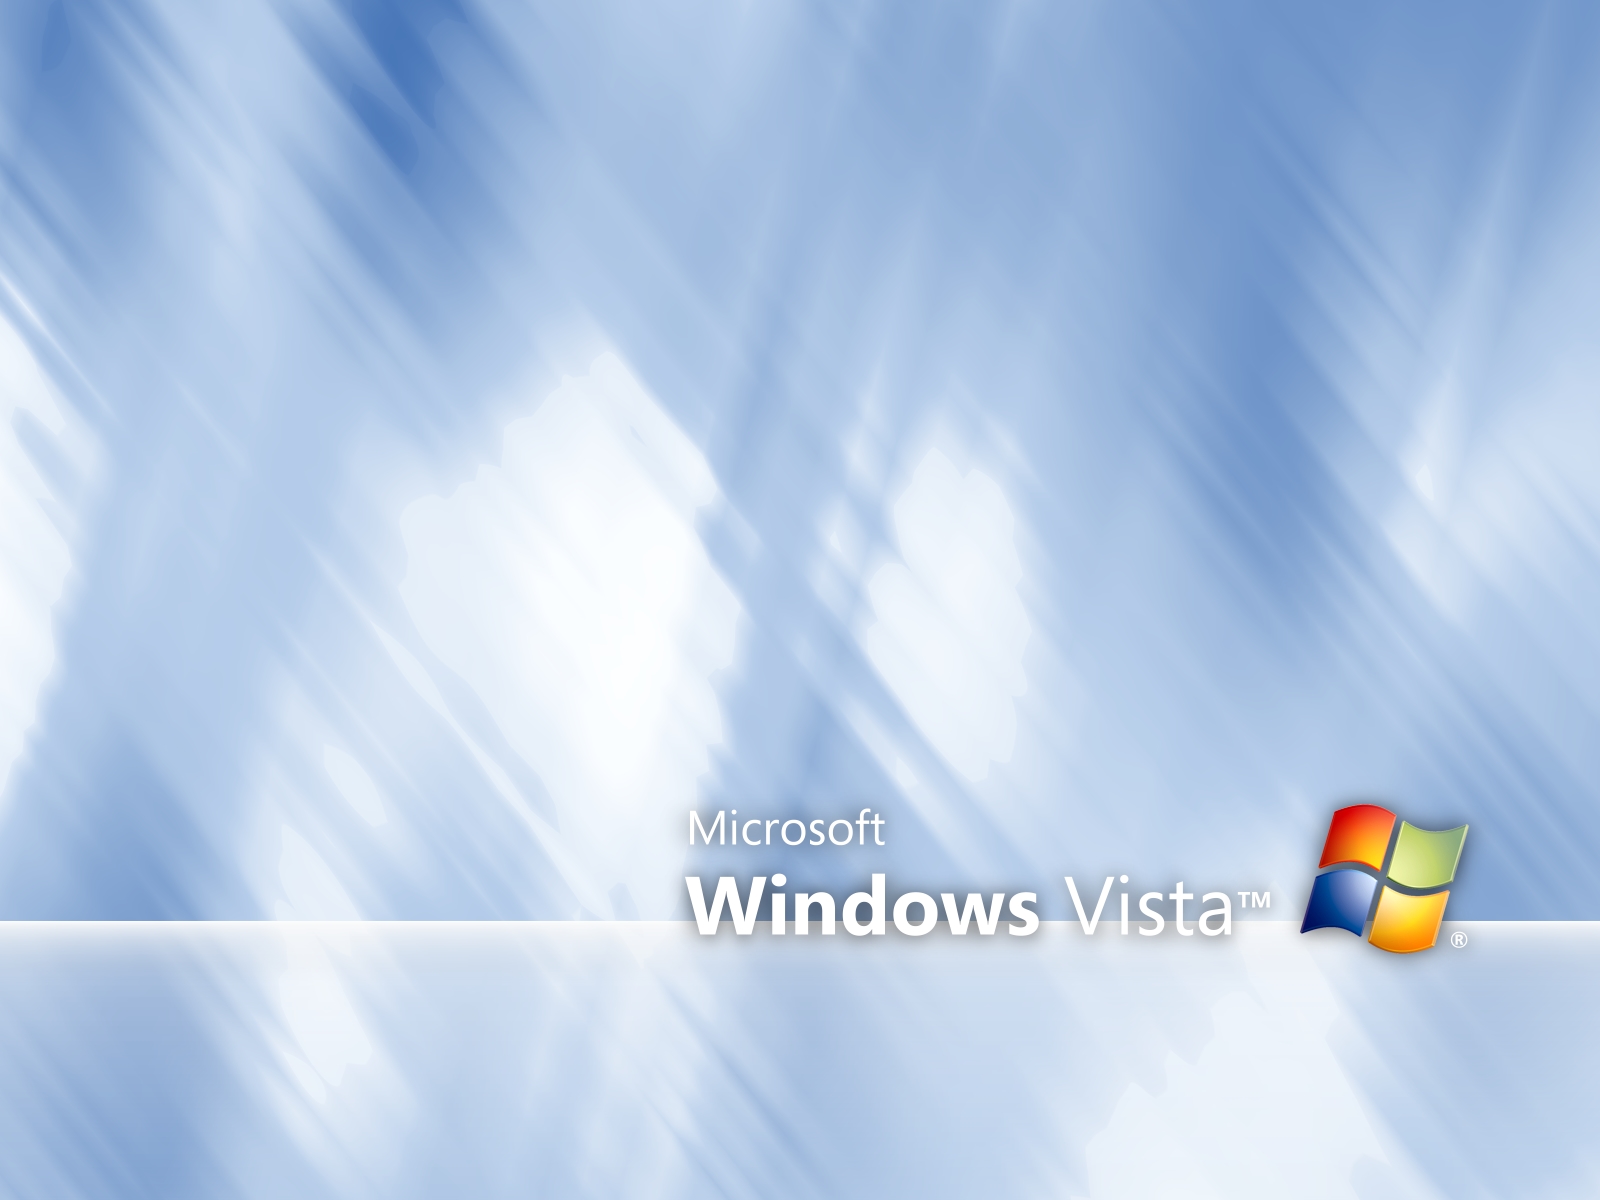 壁纸1600x1200超高分辨率Windows Vista简约壁纸壁纸 超高分辨率Windows Vista简约壁纸壁纸 超高分辨率Windows Vista简约壁纸图片 超高分辨率Windows Vista简约壁纸素材 创意壁纸 创意图库 创意图片素材桌面壁纸